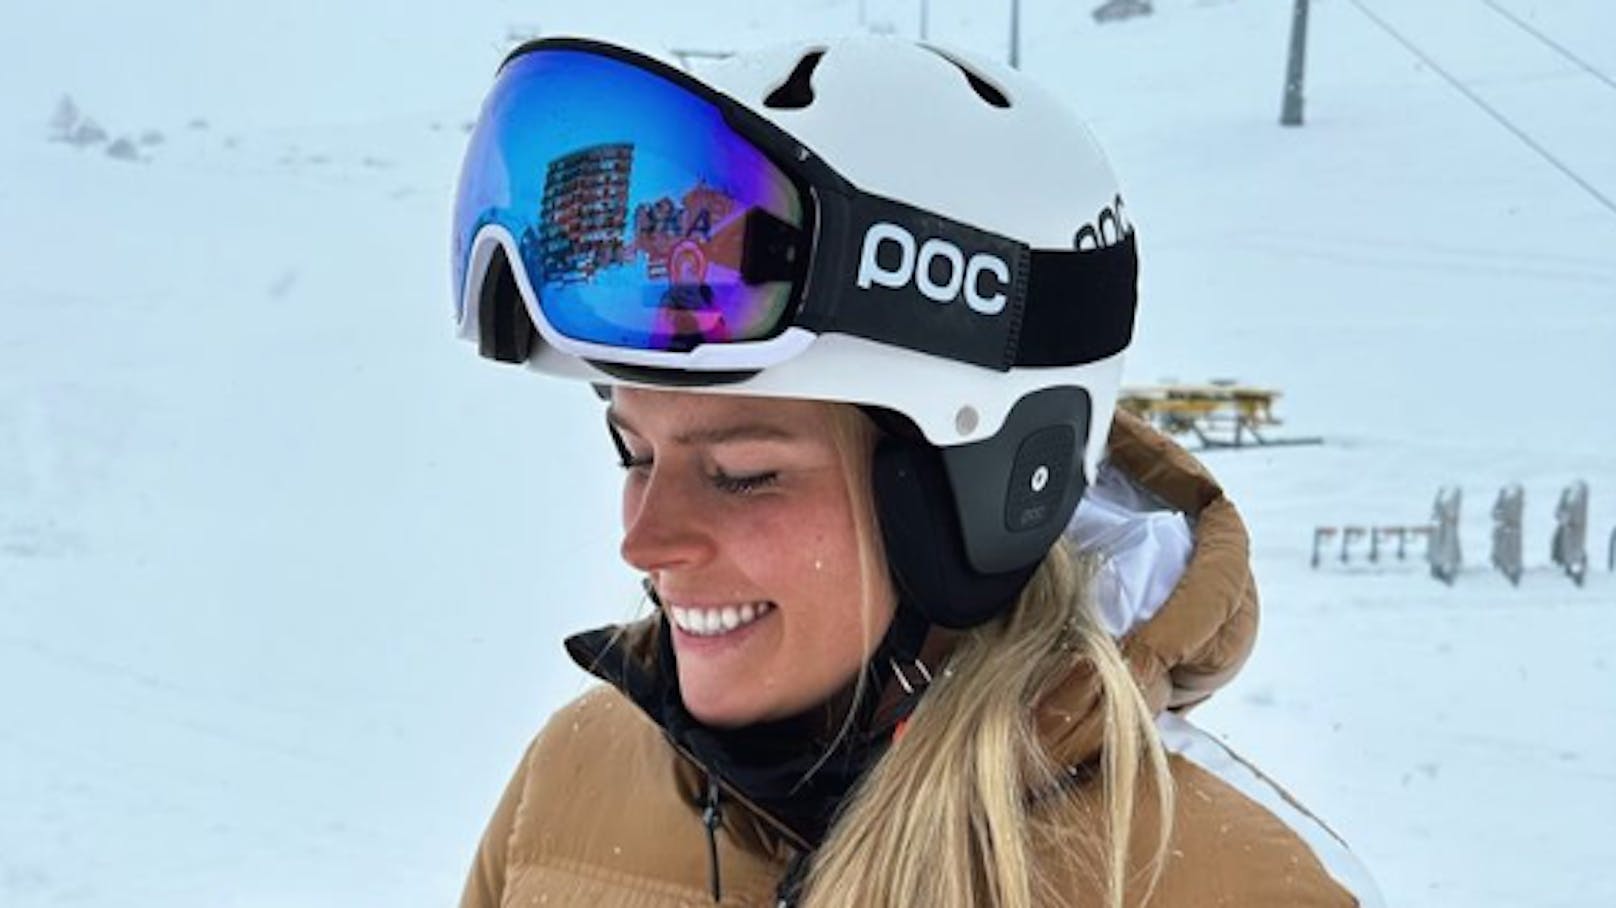 "Ski-Läuferin zu sein, hat mir die Gesundheit genommen"